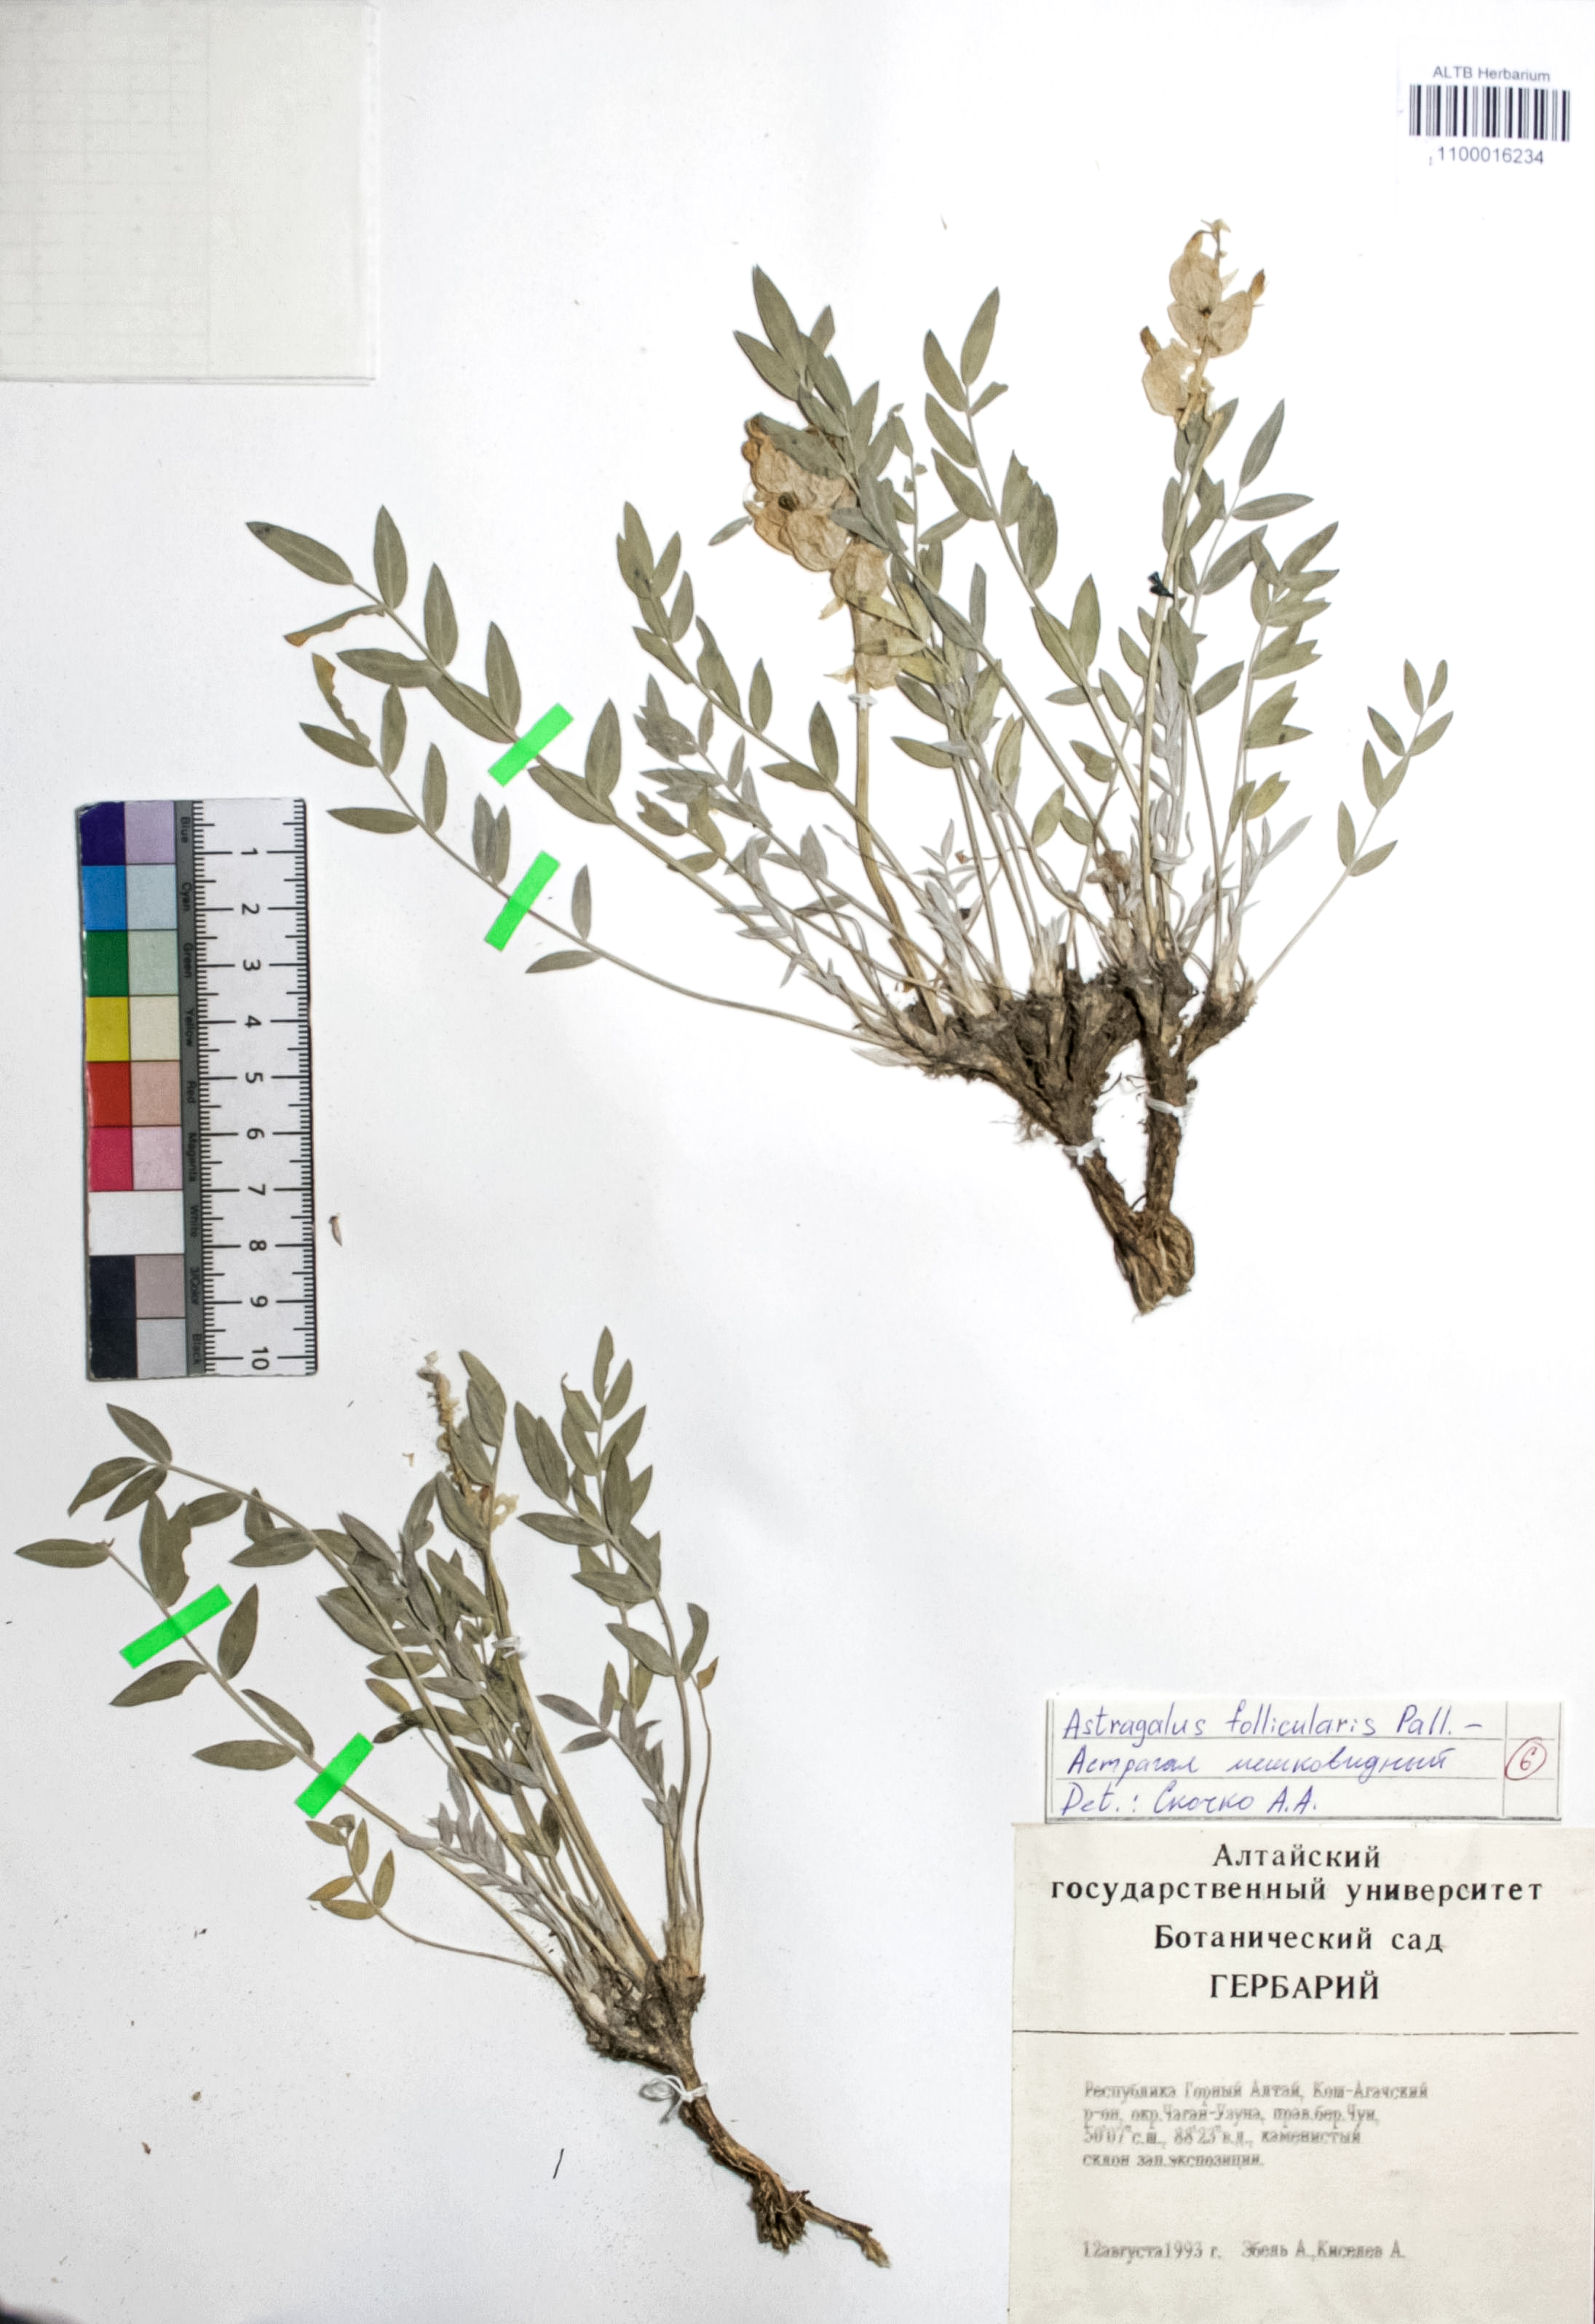 Astragalus follicularis Pall.